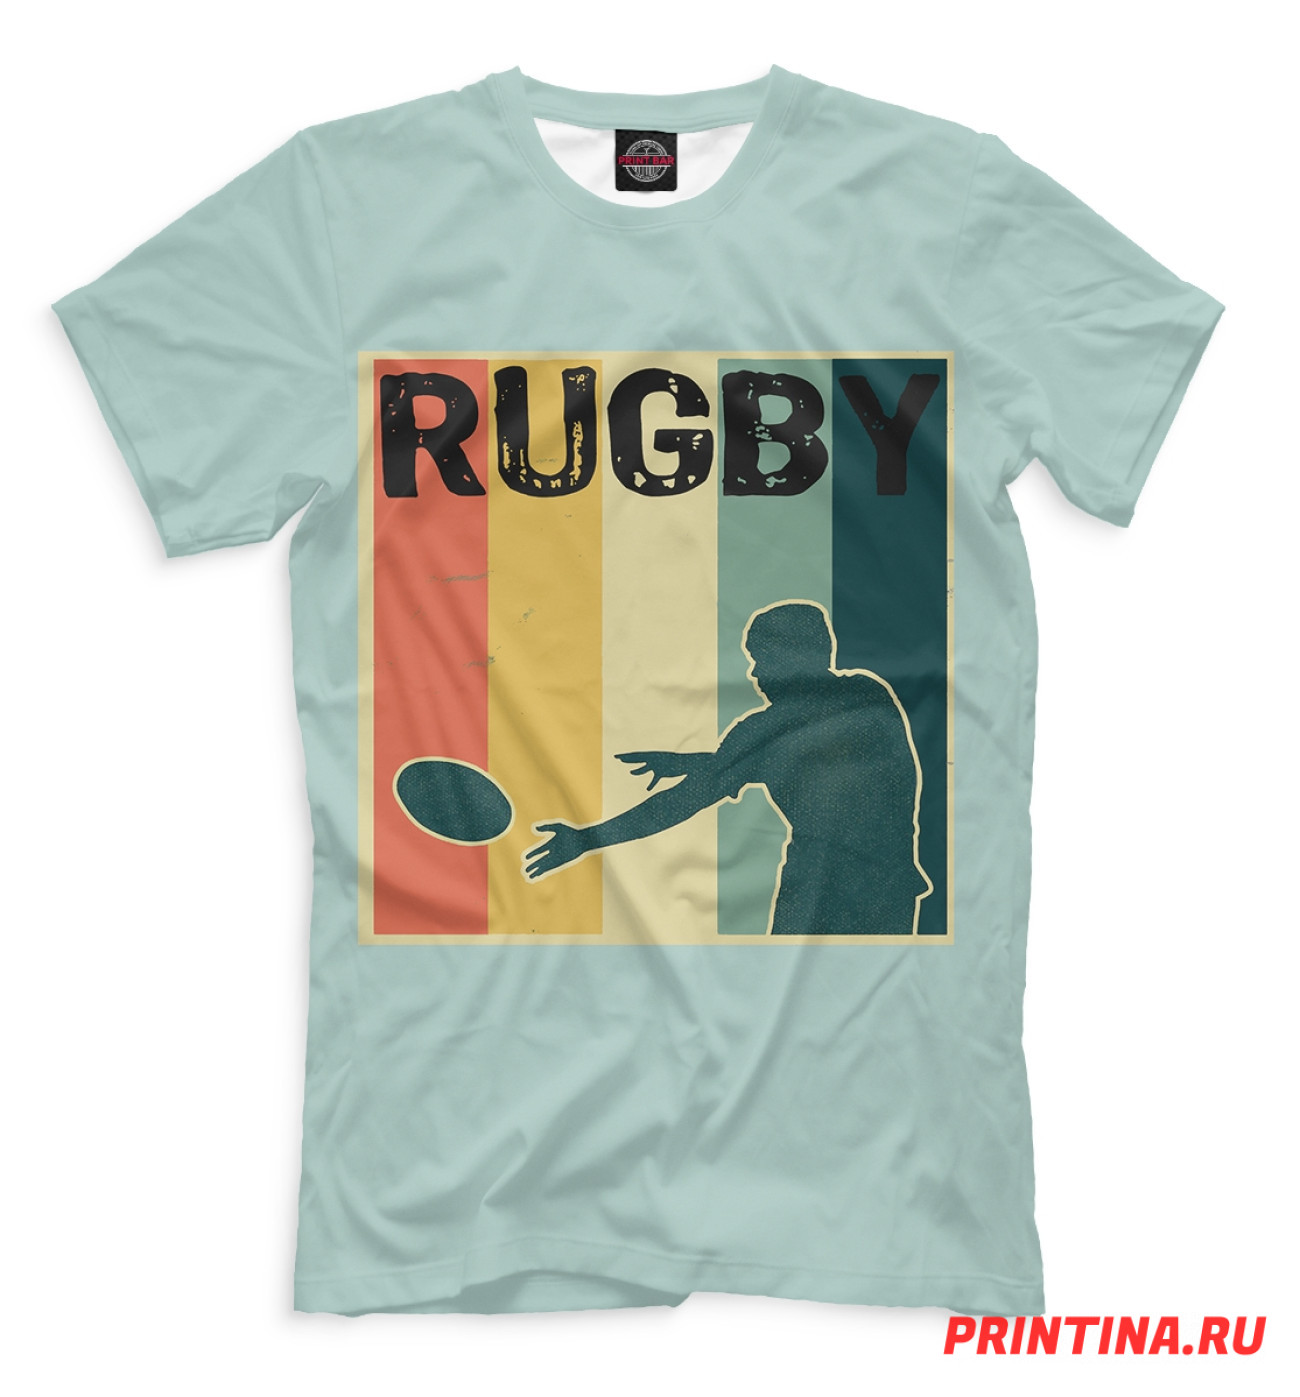 Мужская Футболка Rugby, артикул: REG-336505-fut-2